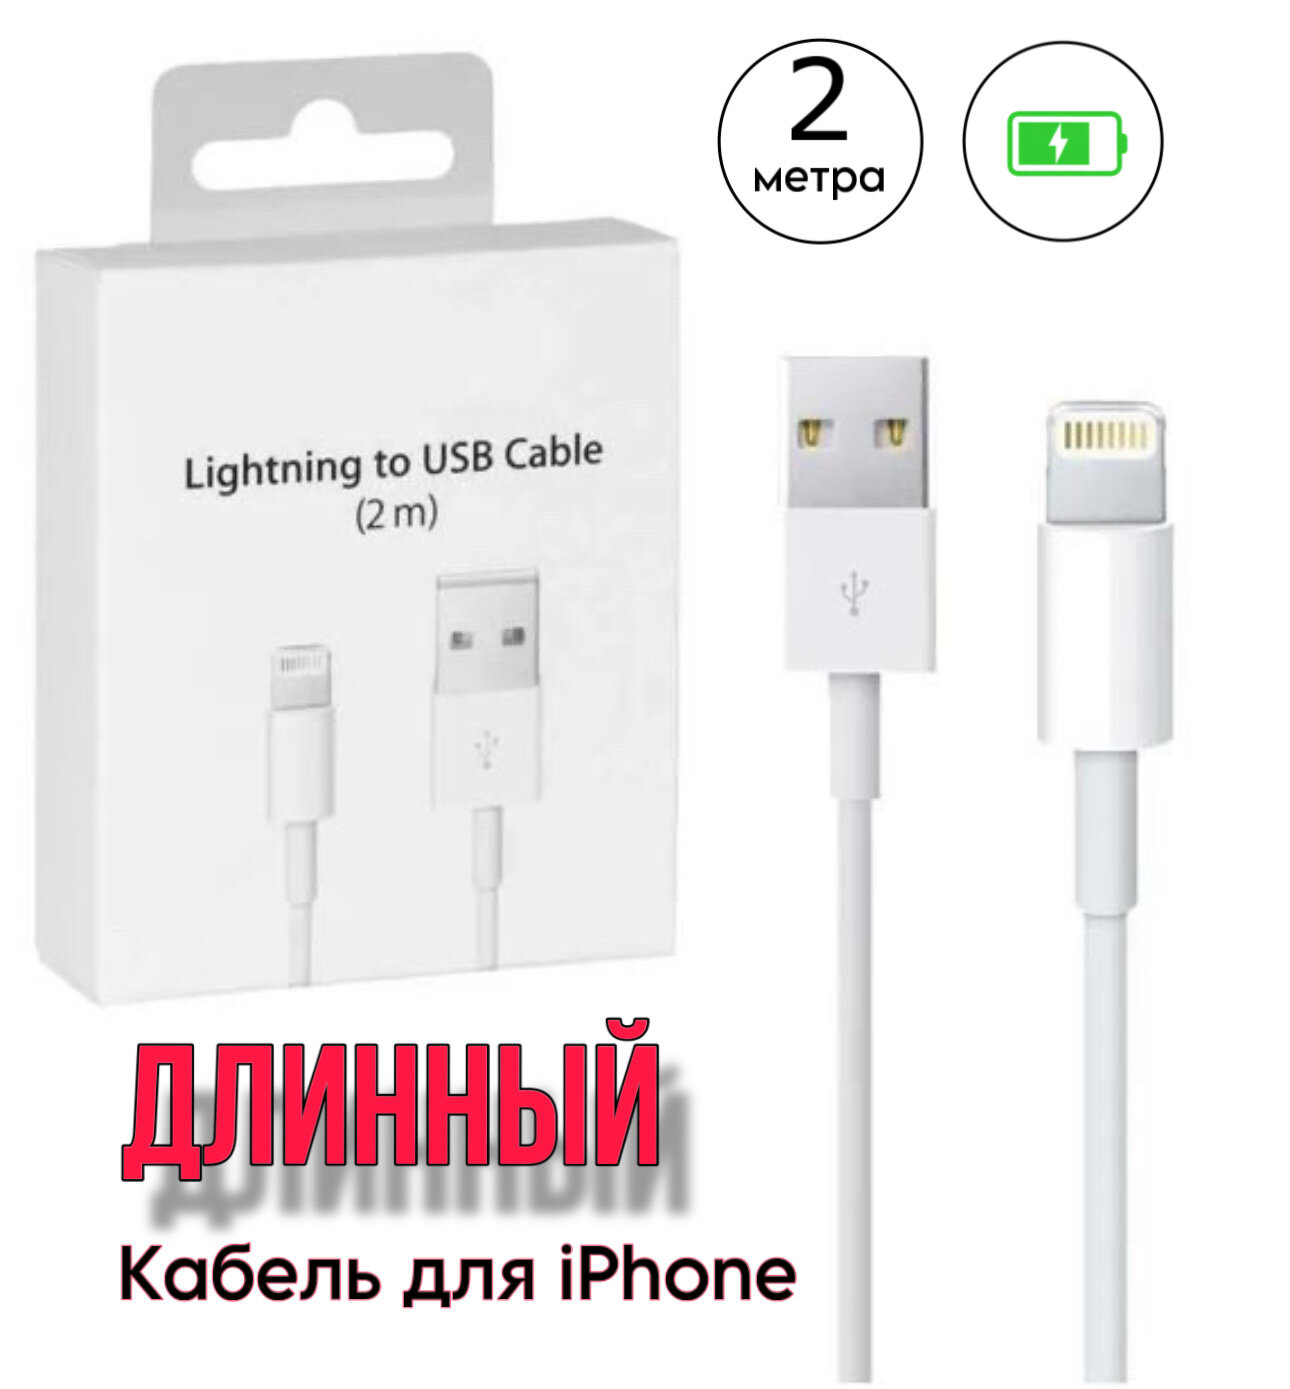 Кабель USB - Lightning для зарядки Apple iPhone, iPad, AirPods, iPod, провод для айфона 2 метра, белый